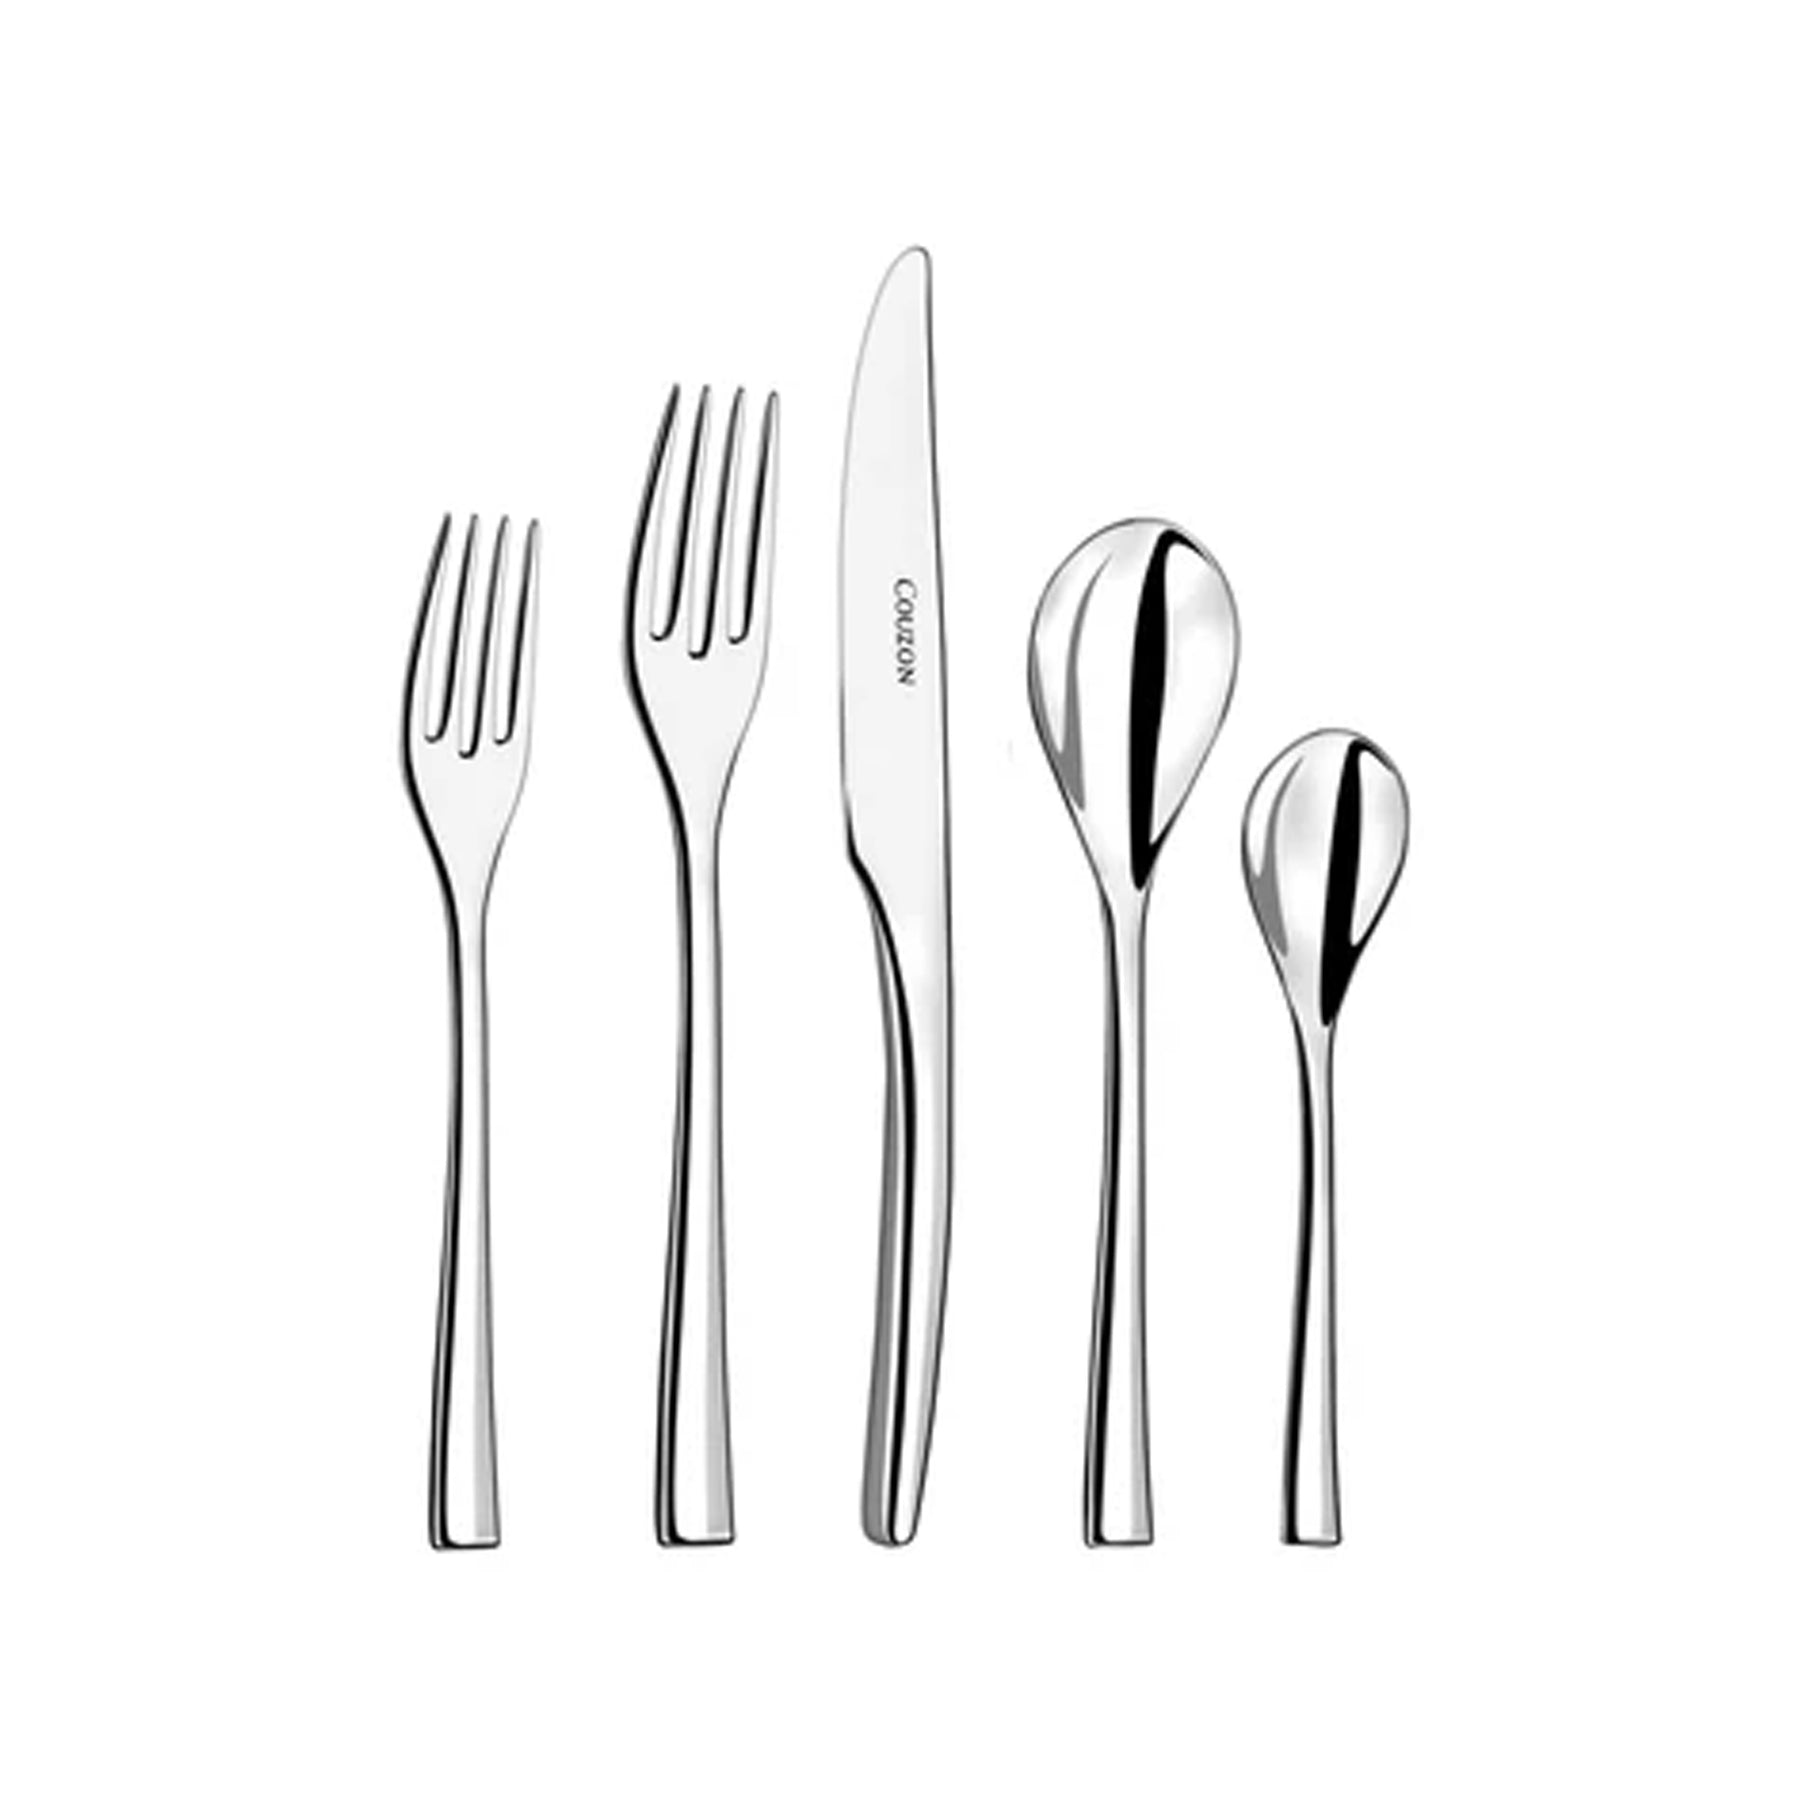 utensils and flatware